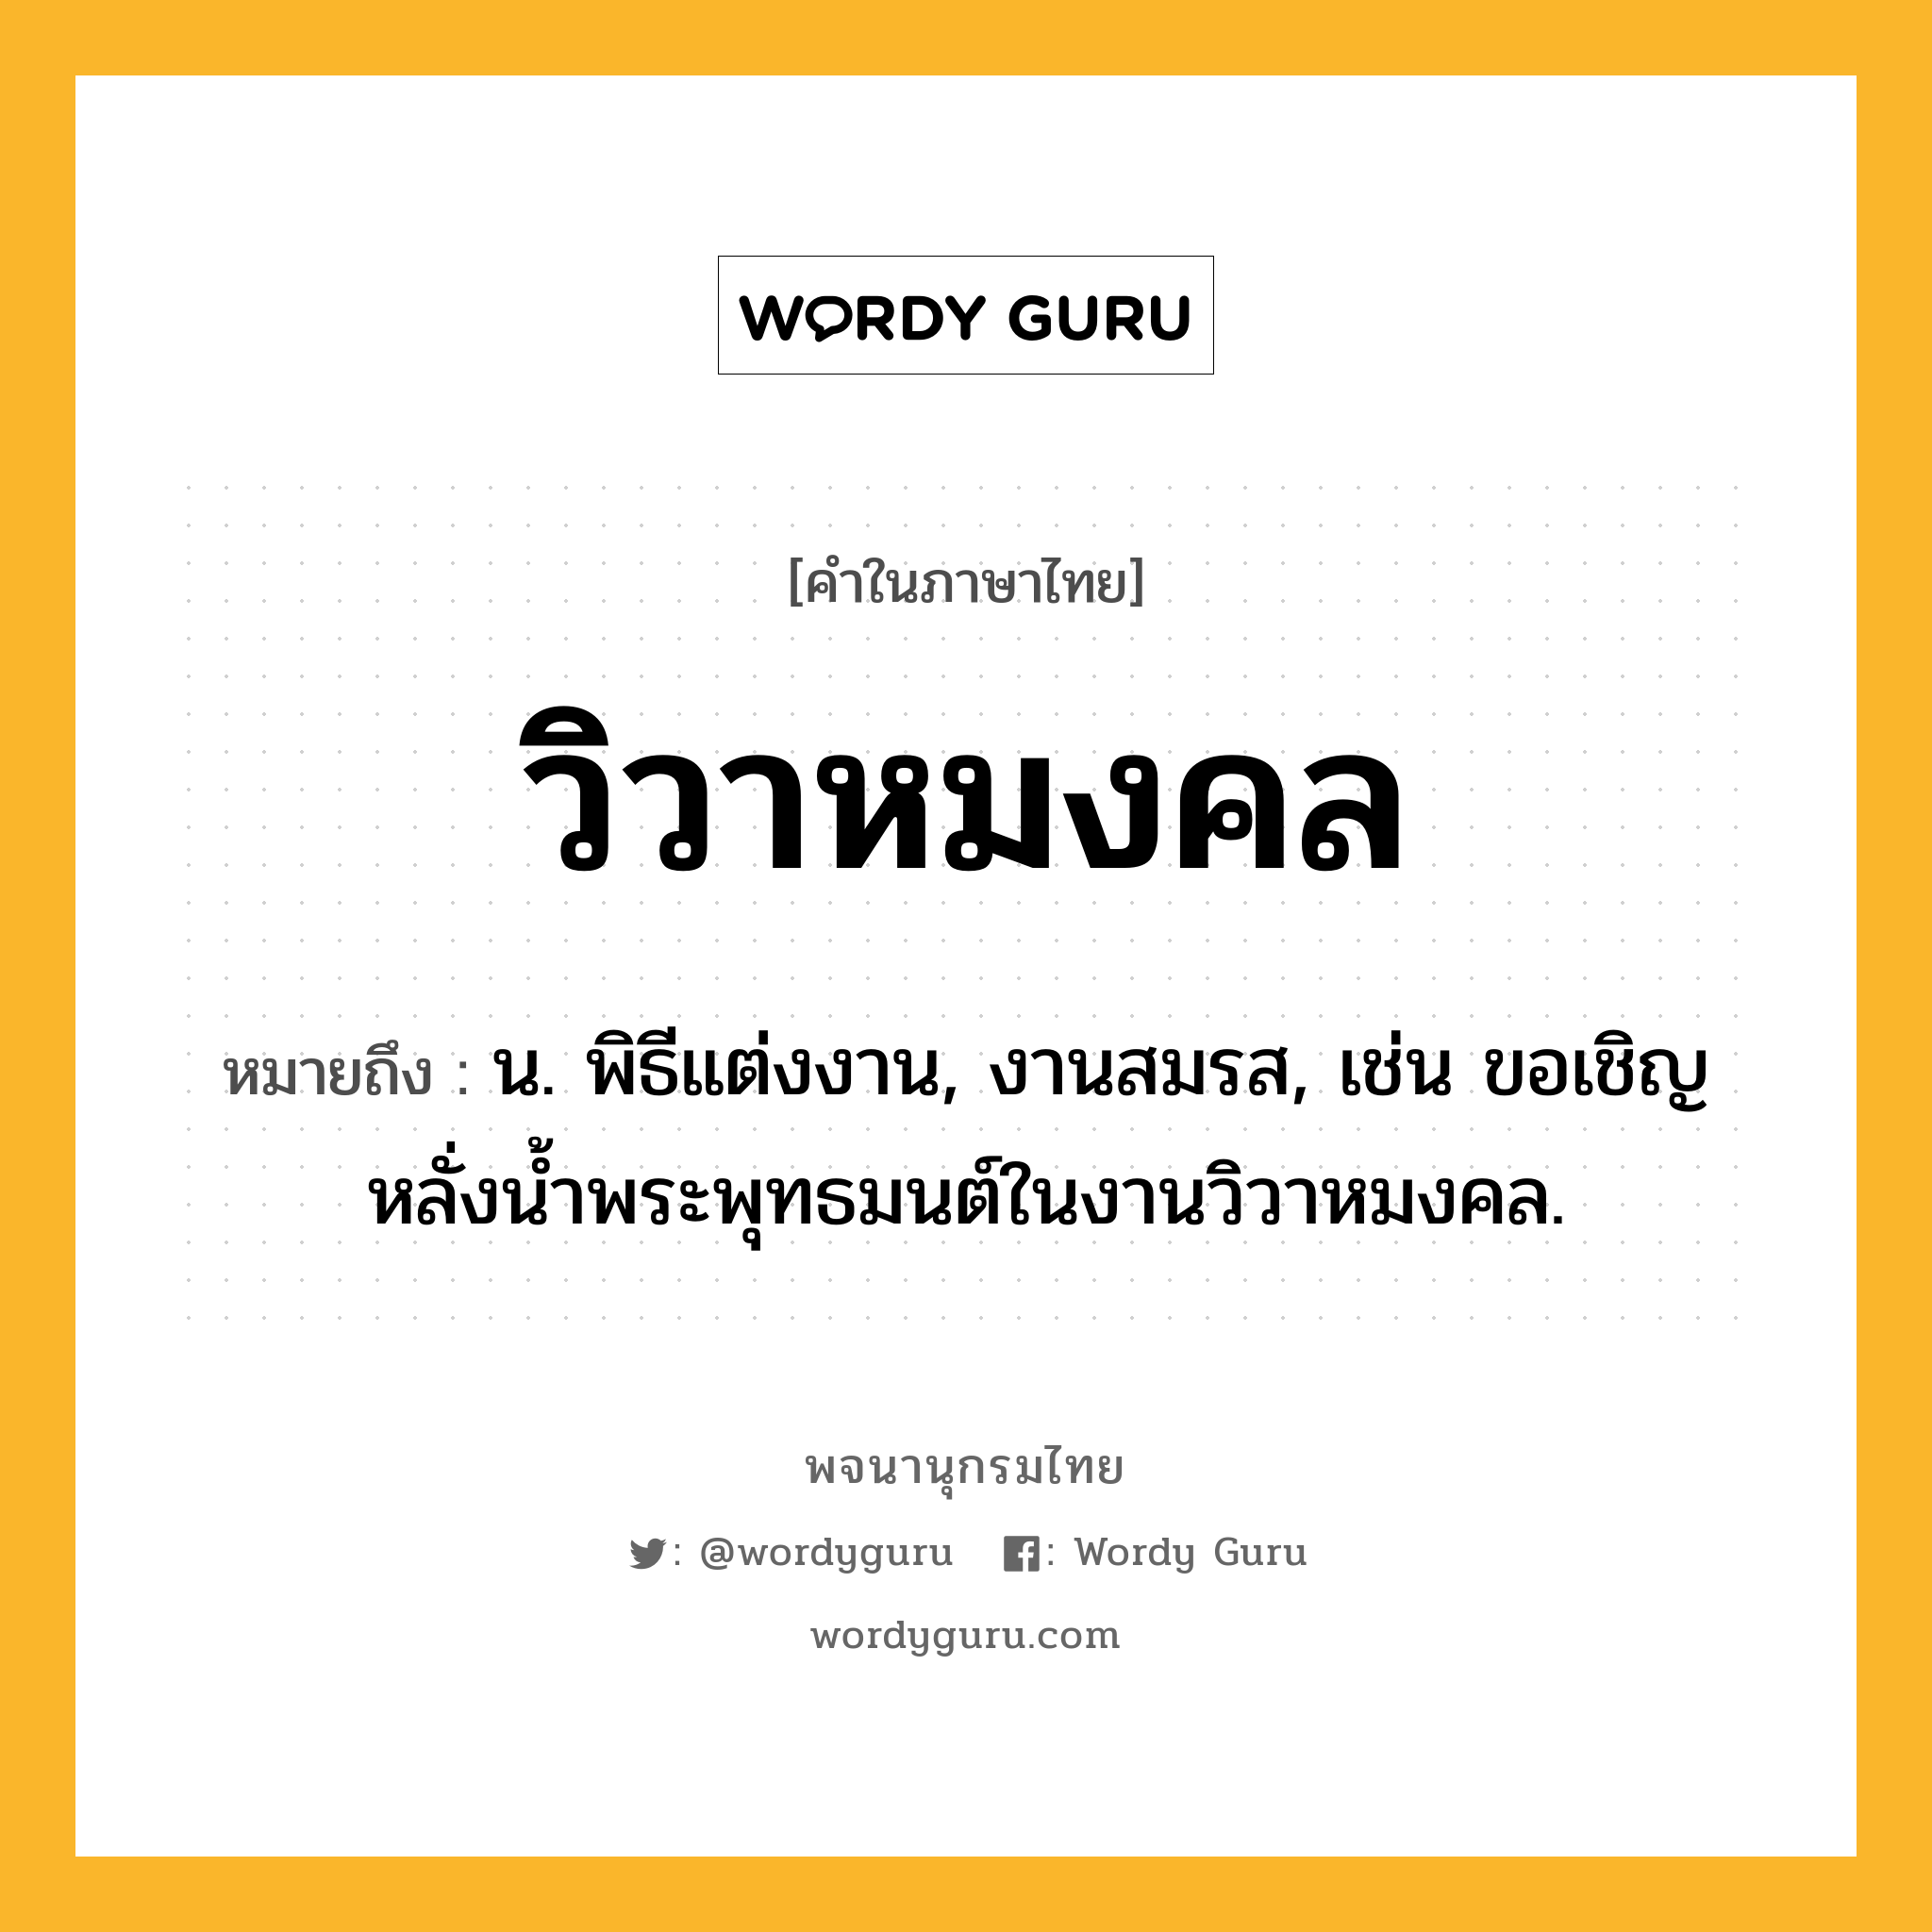 วิวาหมงคล หมายถึงอะไร?, คำในภาษาไทย วิวาหมงคล หมายถึง น. พิธีแต่งงาน, งานสมรส, เช่น ขอเชิญหลั่งน้ำพระพุทธมนต์ในงานวิวาหมงคล.